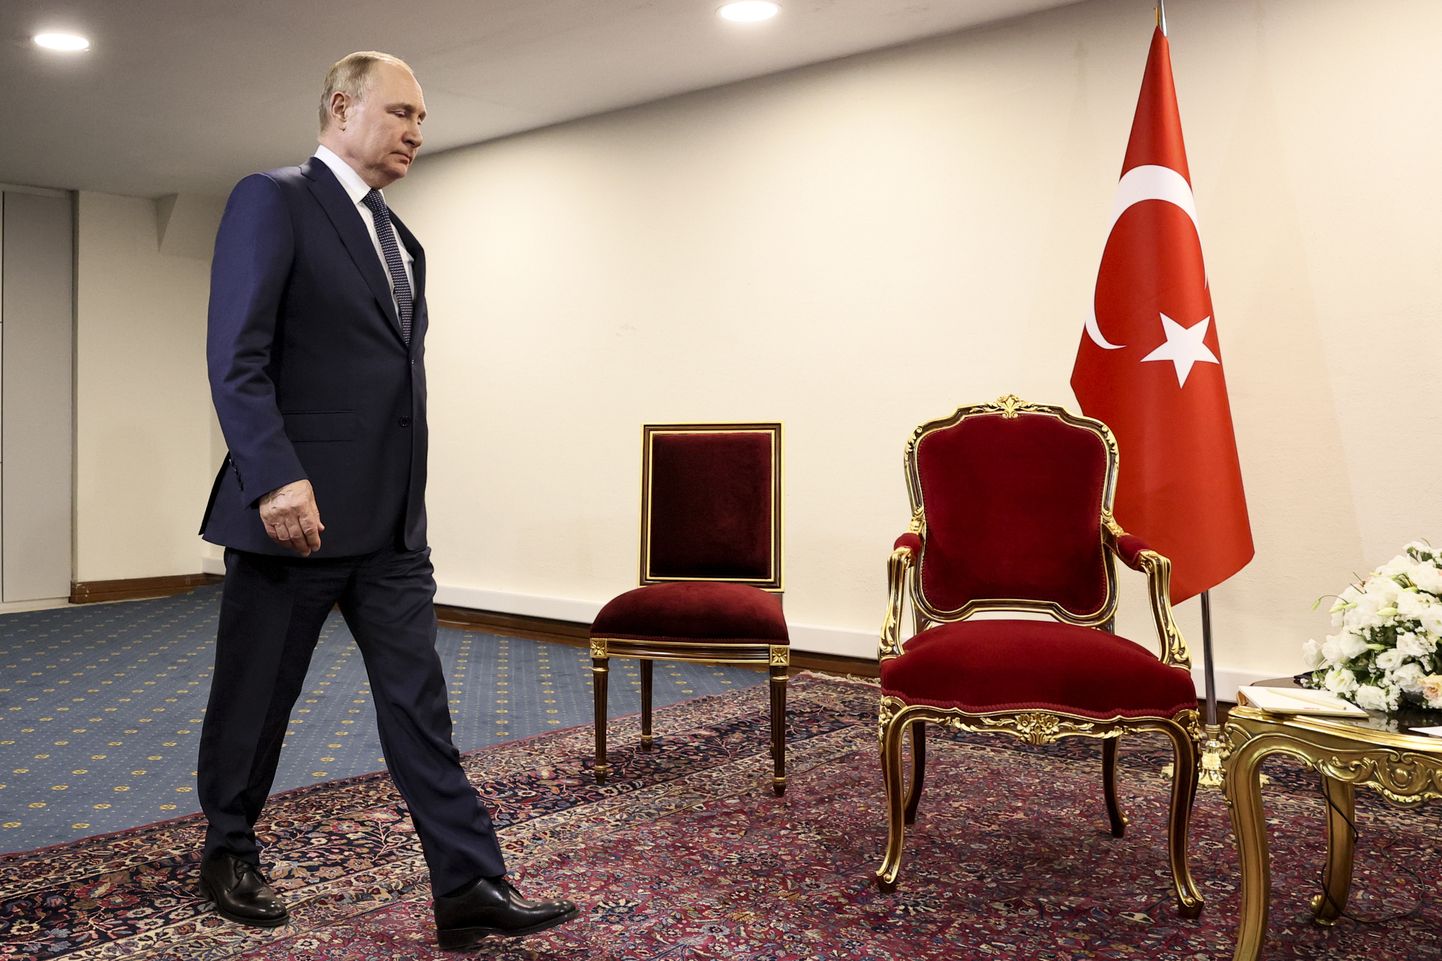 Venemaa president Vladimir Putin pidi 19. juulil 2022 Iraani pealinnas Teheranis ootama Türgi presidenti Recep Tayyip Erdoğani, kes jäi 50 sekundit hiljaks